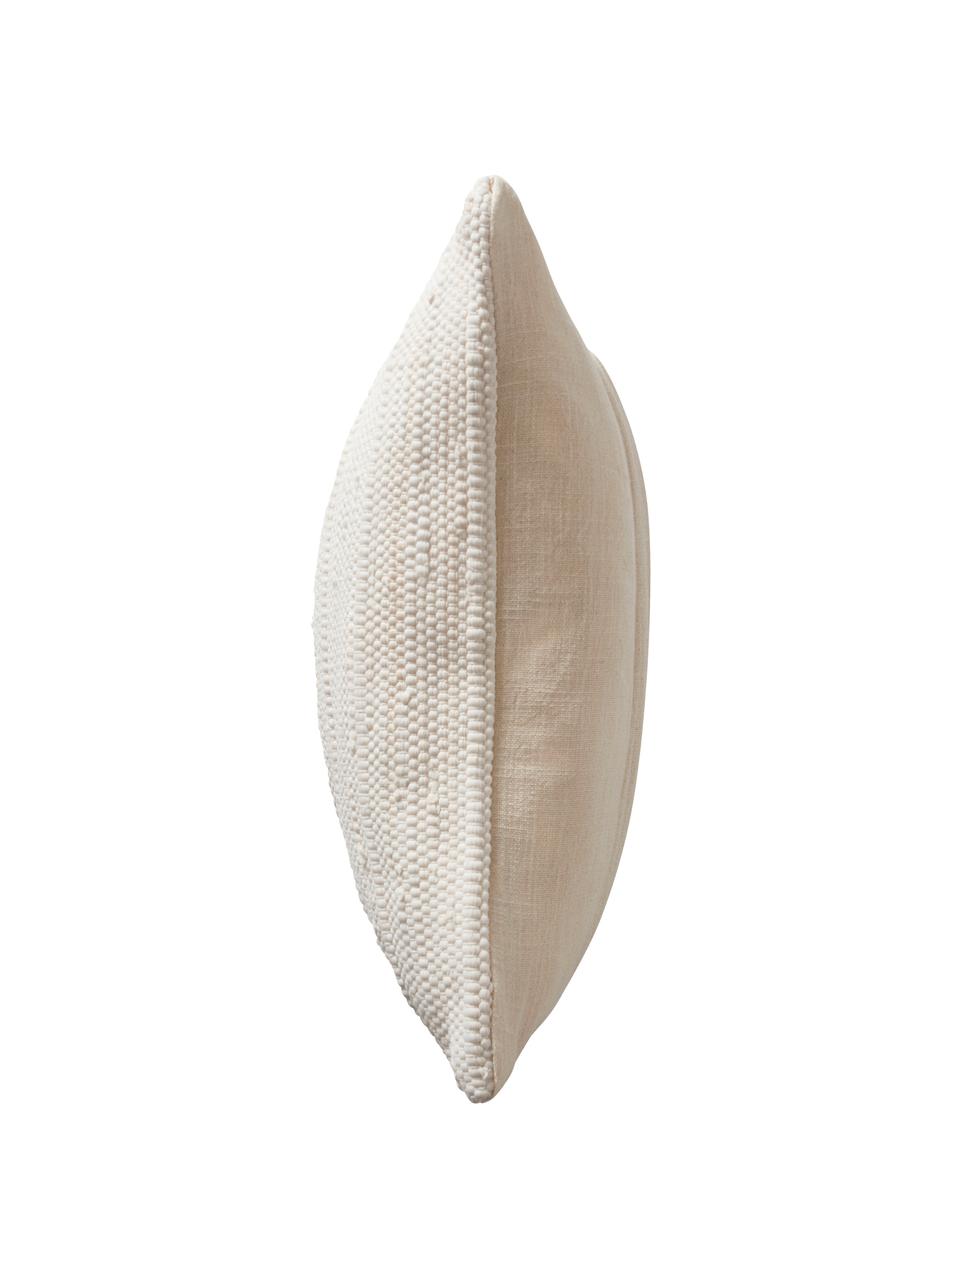 Kissenhülle Elvira mit strukturierter Oberfläche, 90% recycelte Baumwolle, 10% Baumwolle, Beige, B 50 x L 50 cm